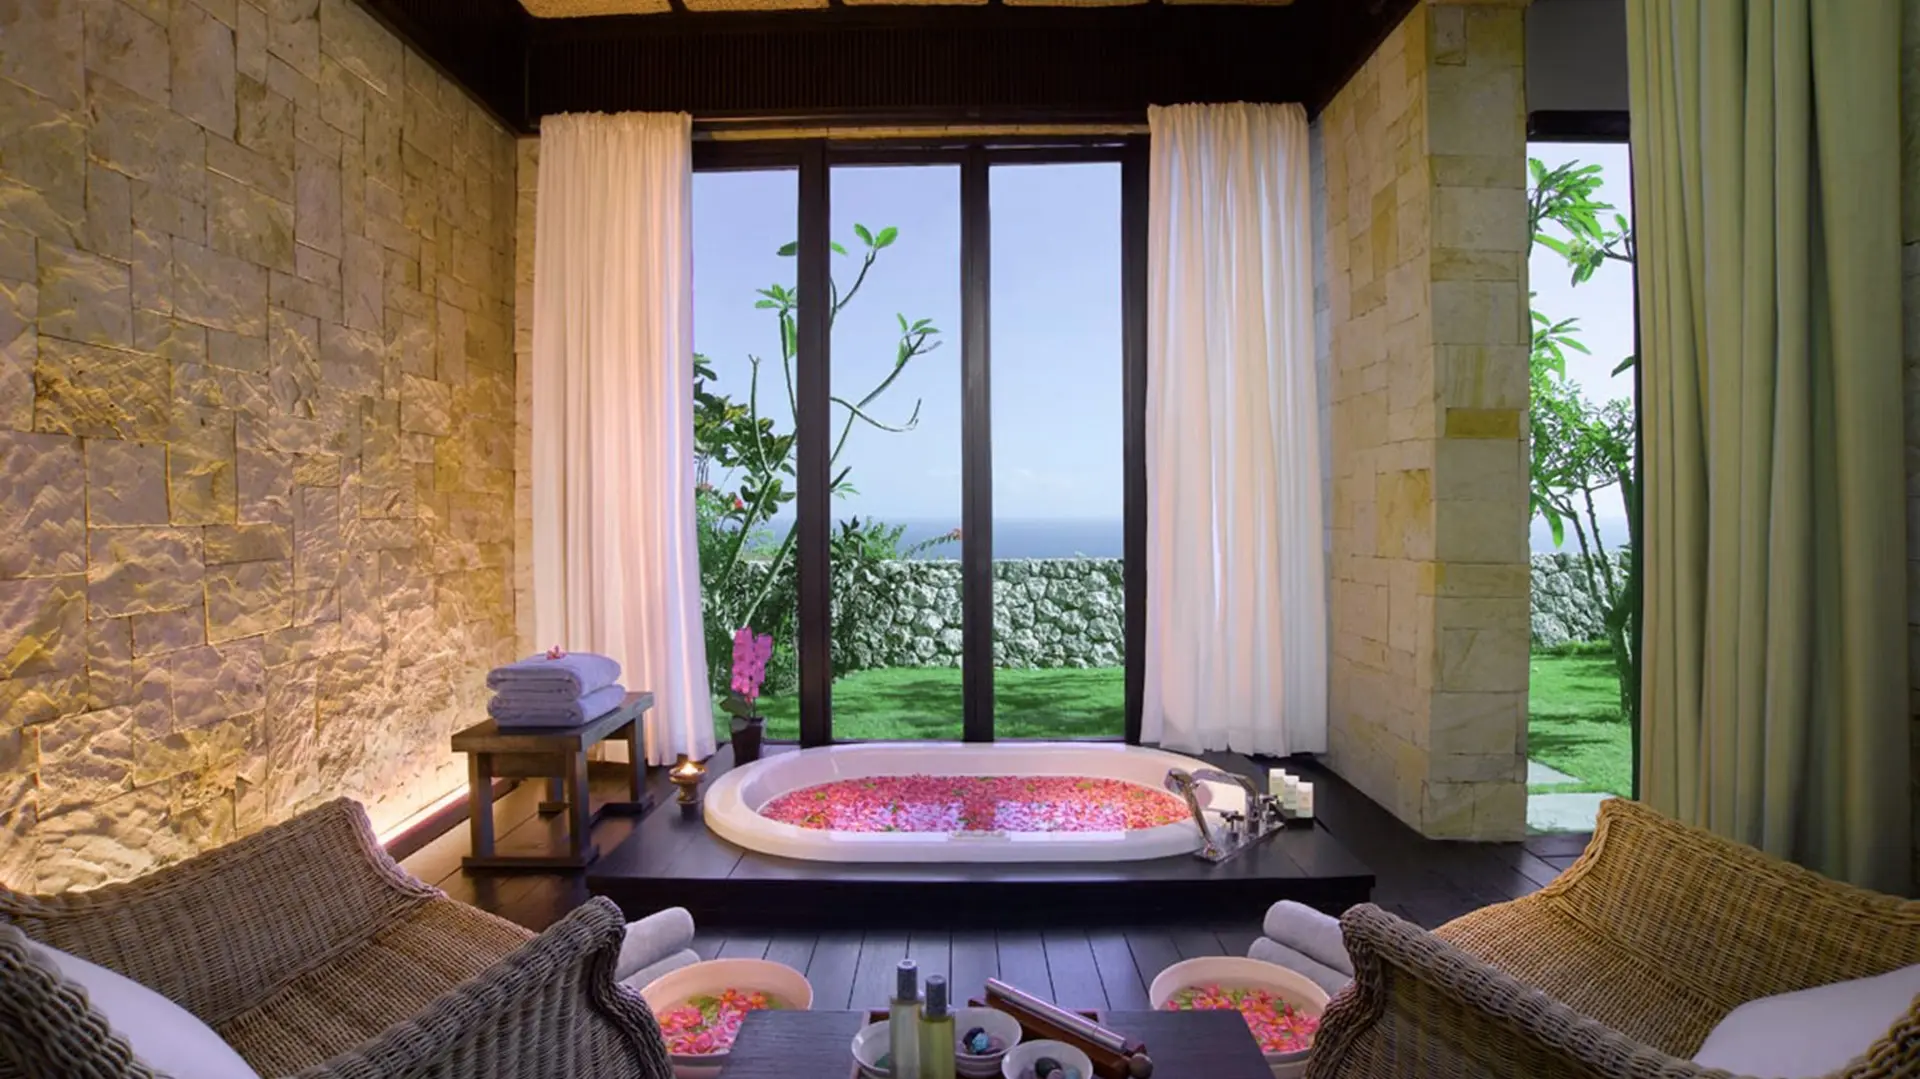 Hotel review Service & Facilities' - Bulgari Resort Bali - 3